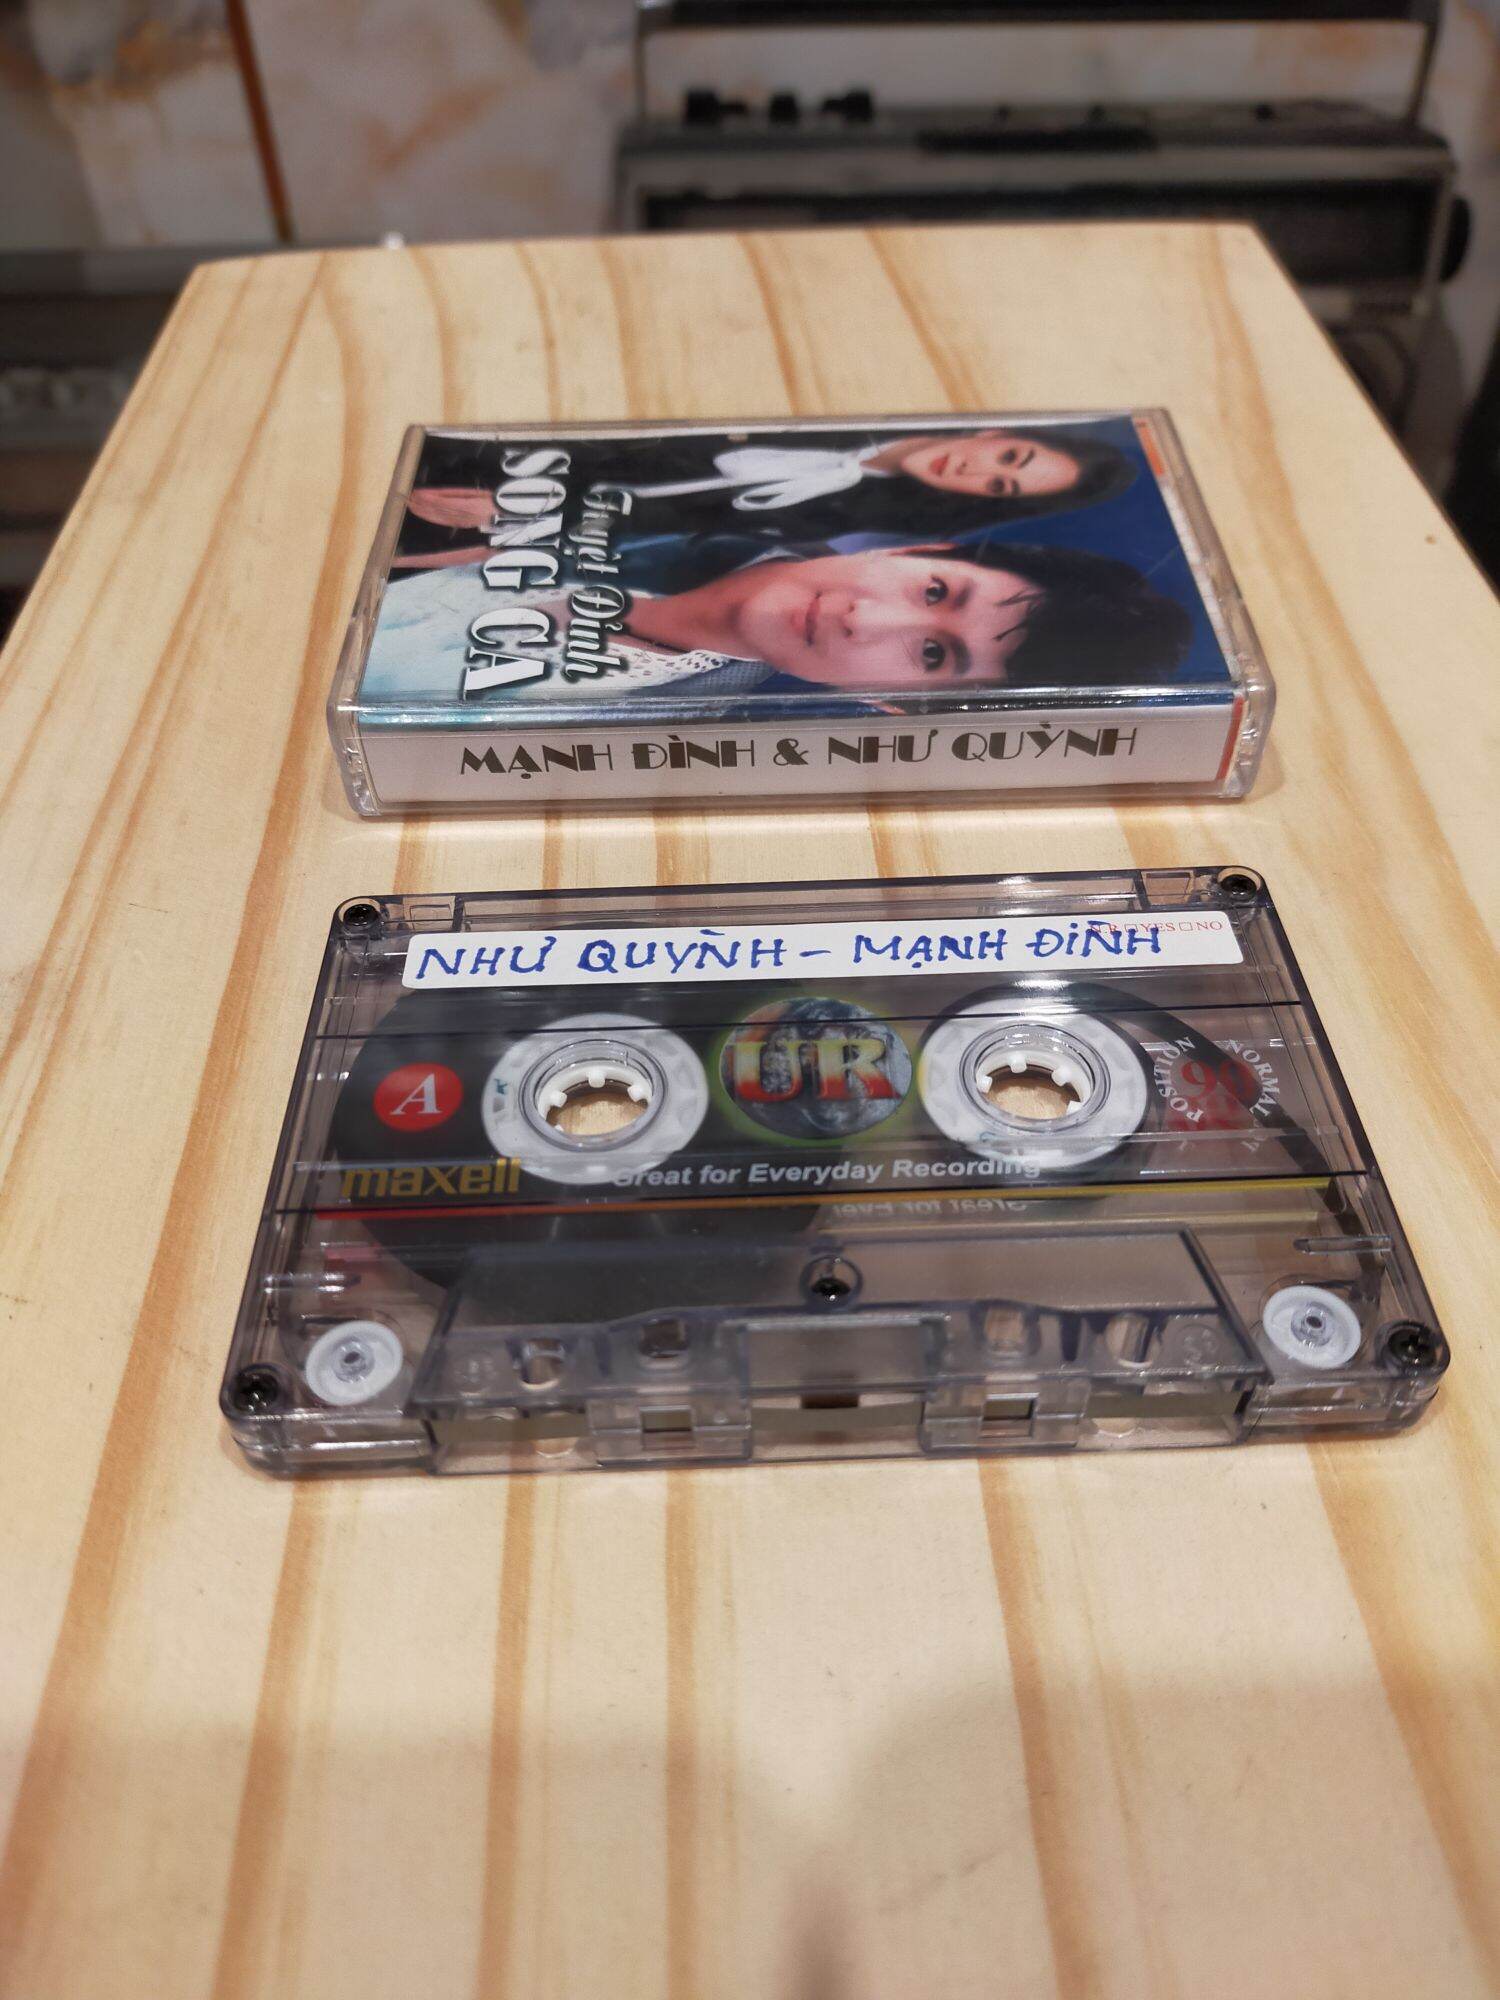 1 băng cassette maxell UR 90S tiếng hát như quỳnh - mạnh đình( lưu ý: đây là băng cũ